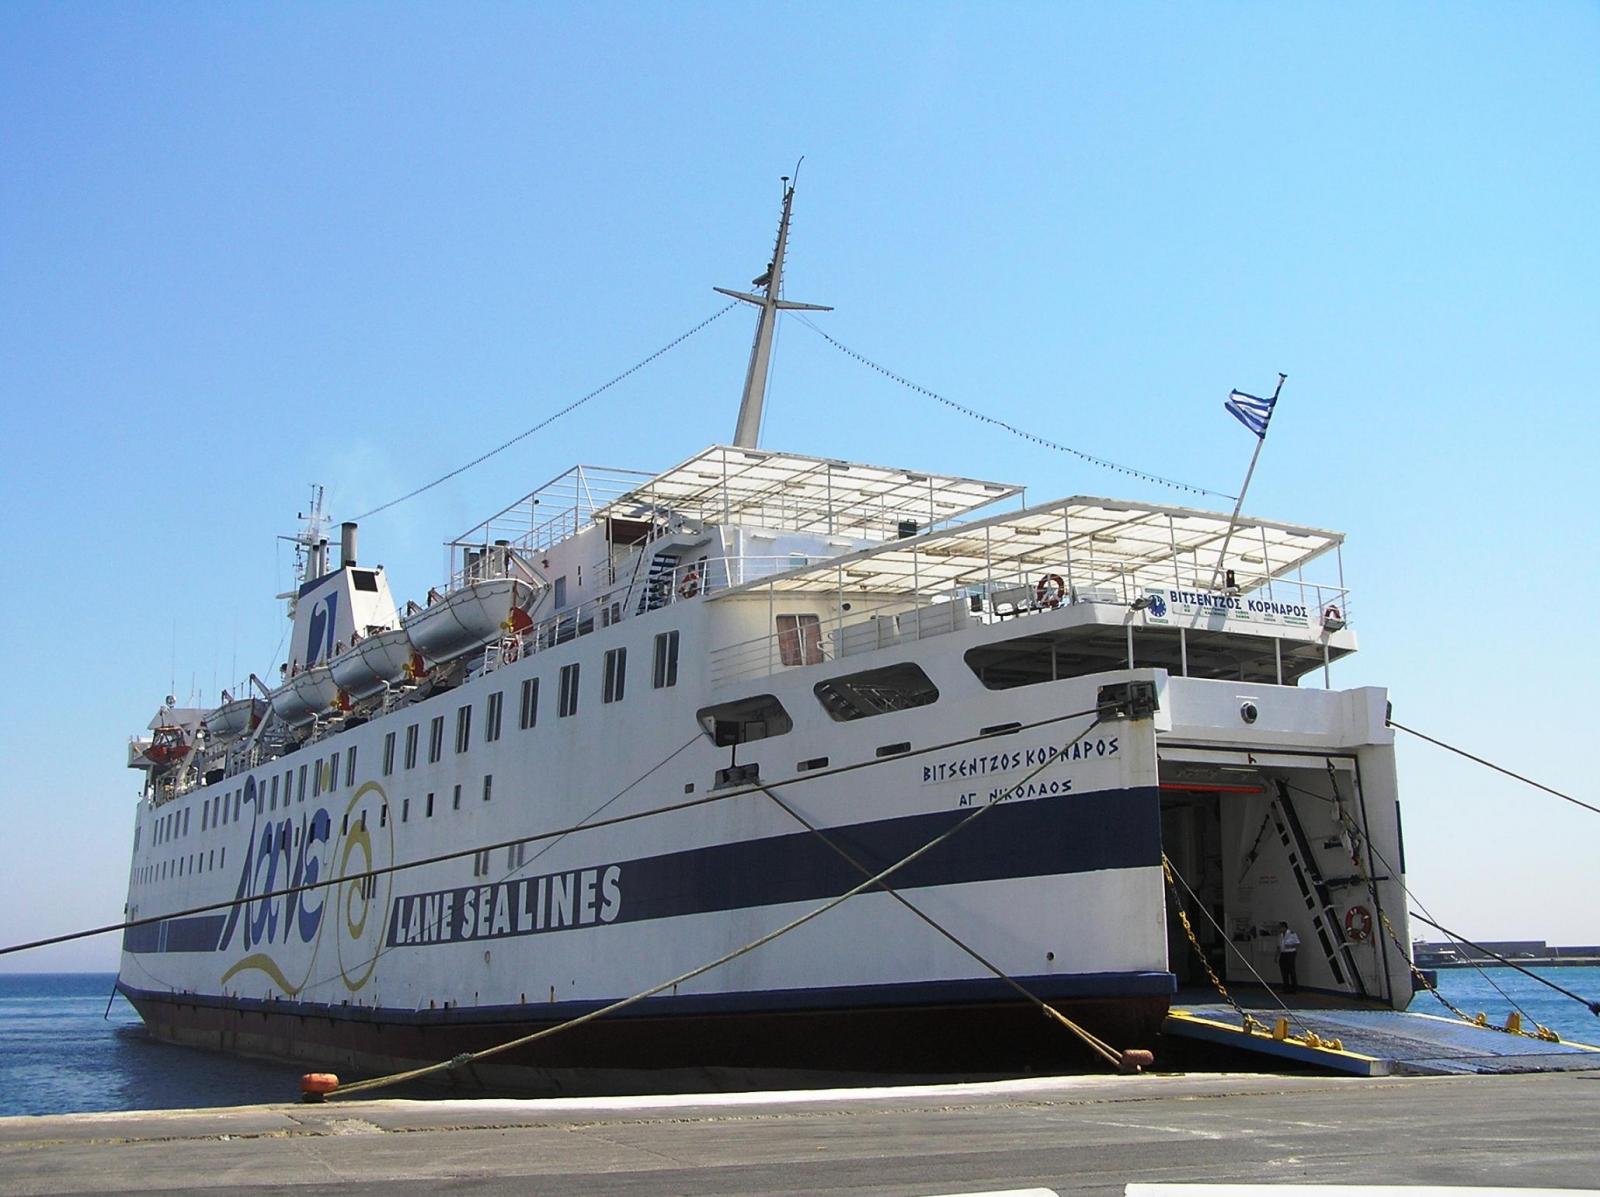 Πρόσκρουση του “Βιτσέντζος Κορνάρος” στο λιμάνι της Κισάμου